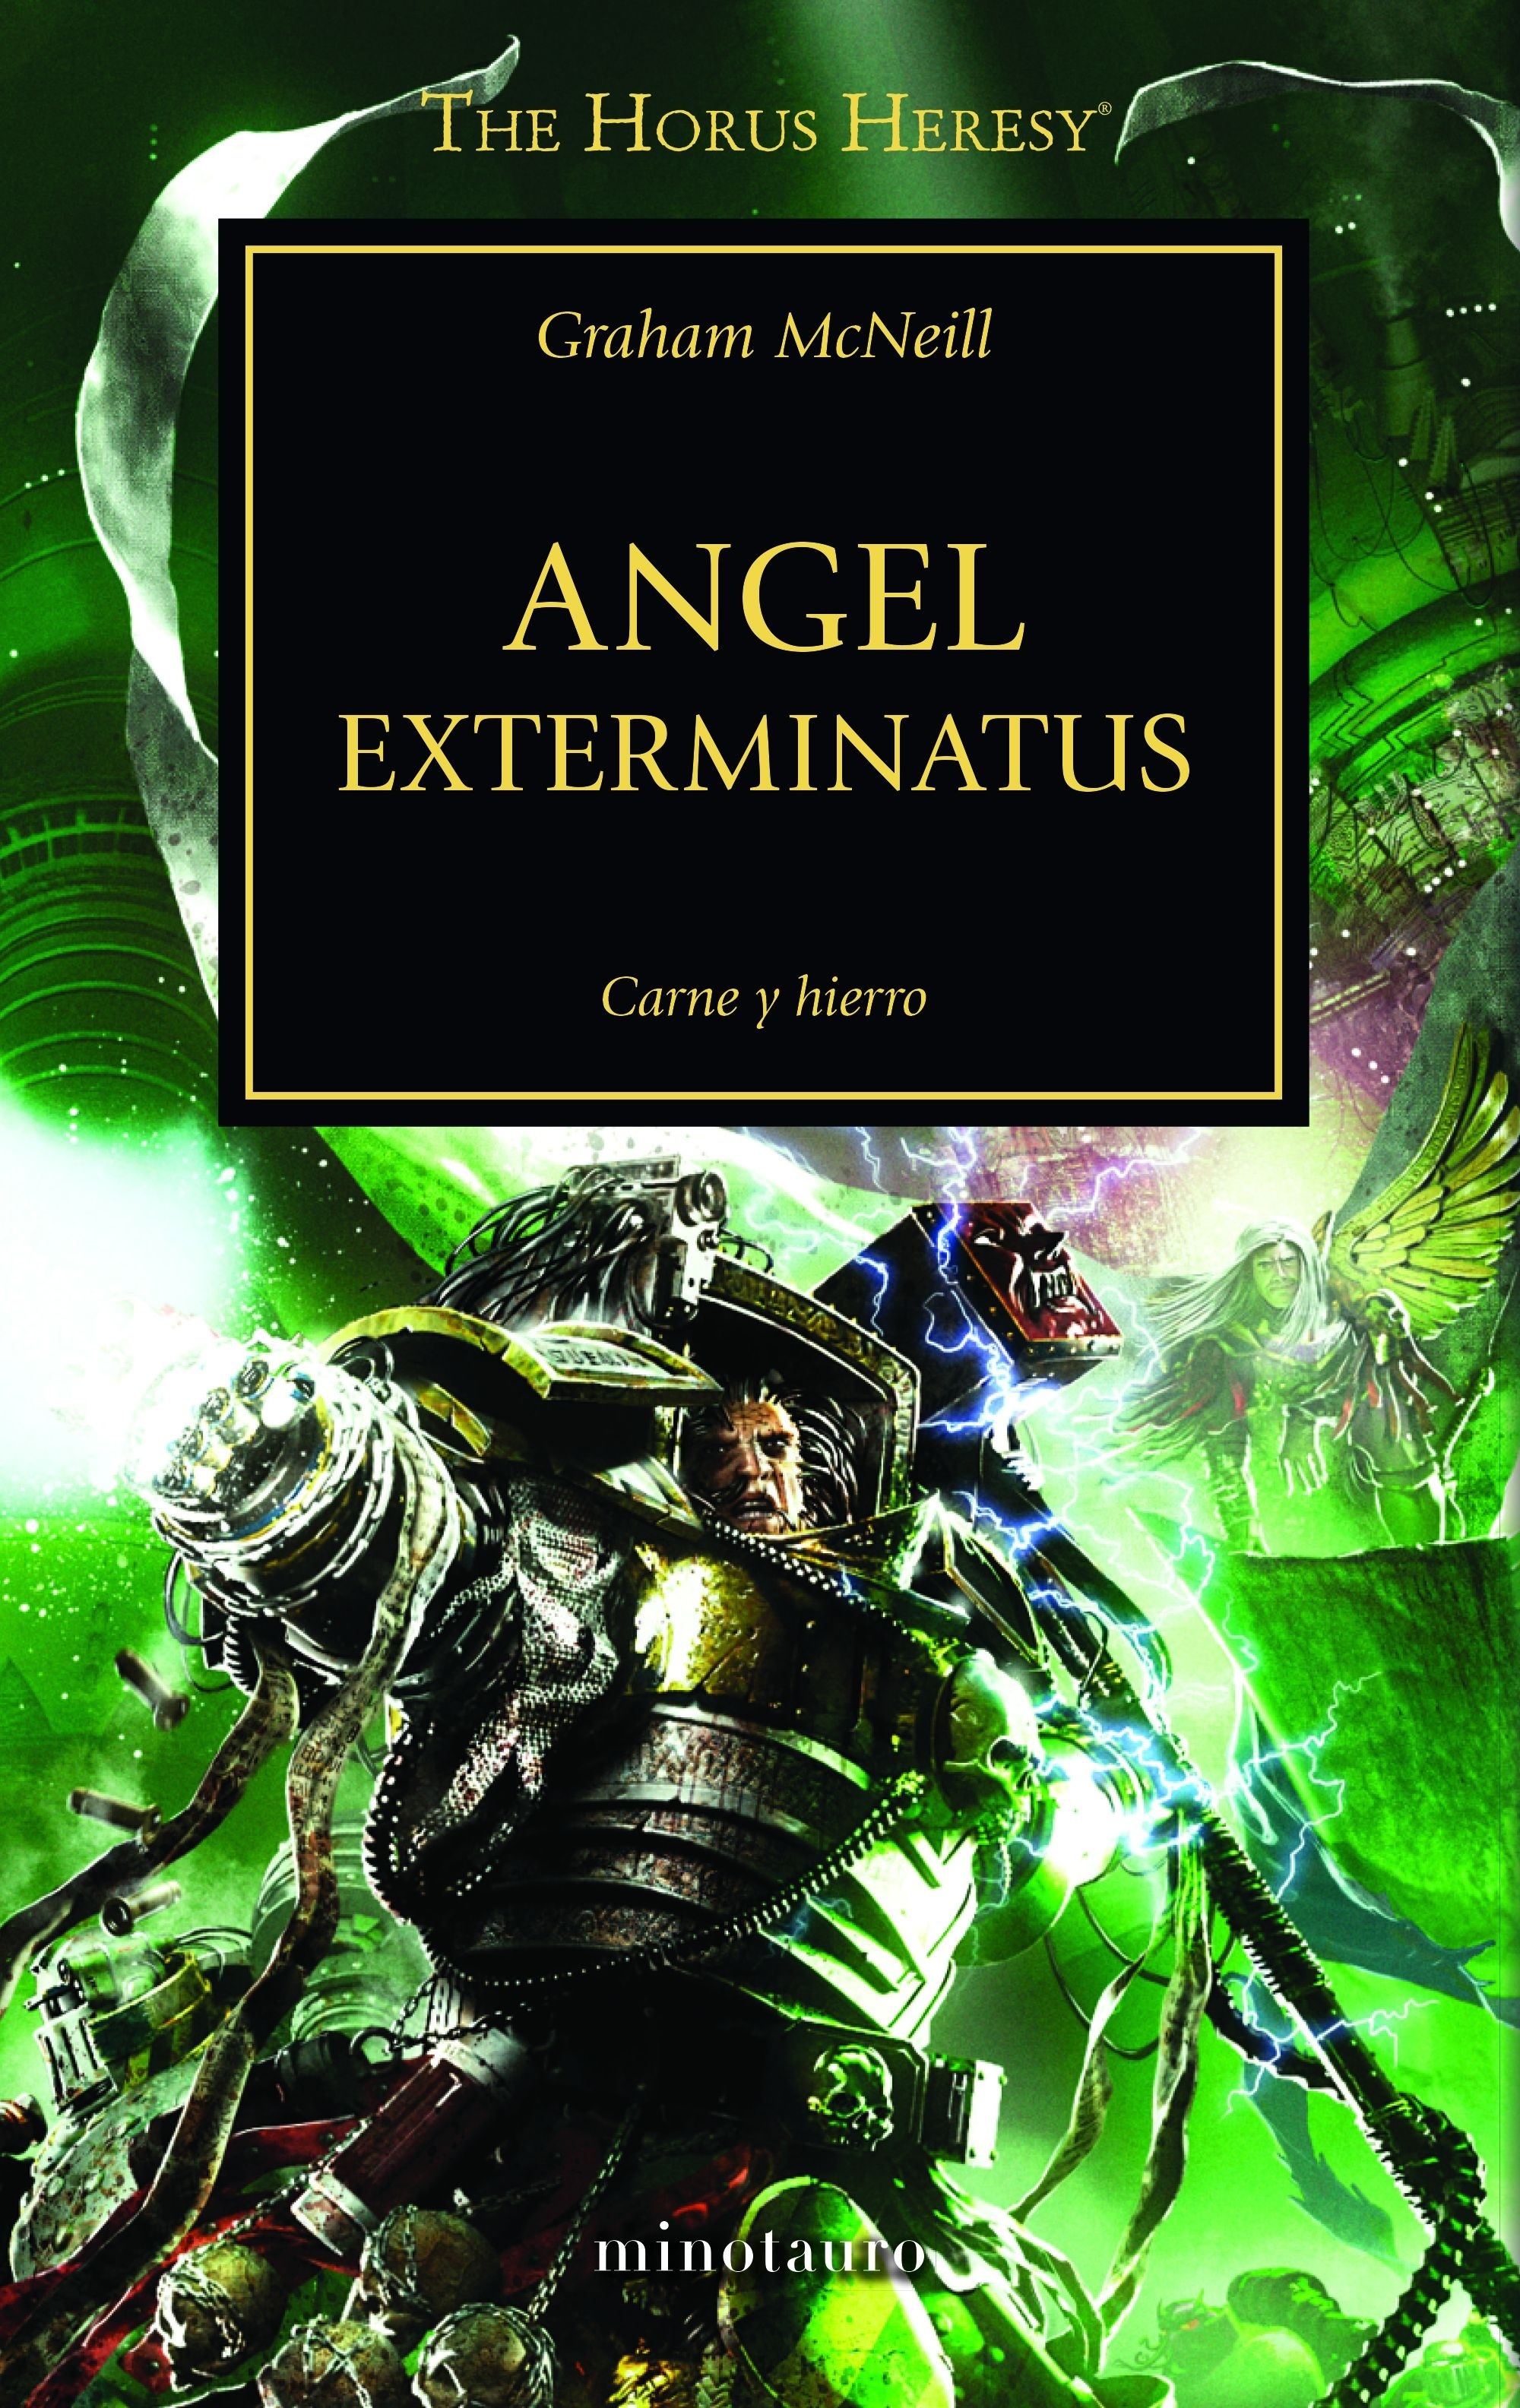 Angel Exterminatus "La Herejía de Horus 23"